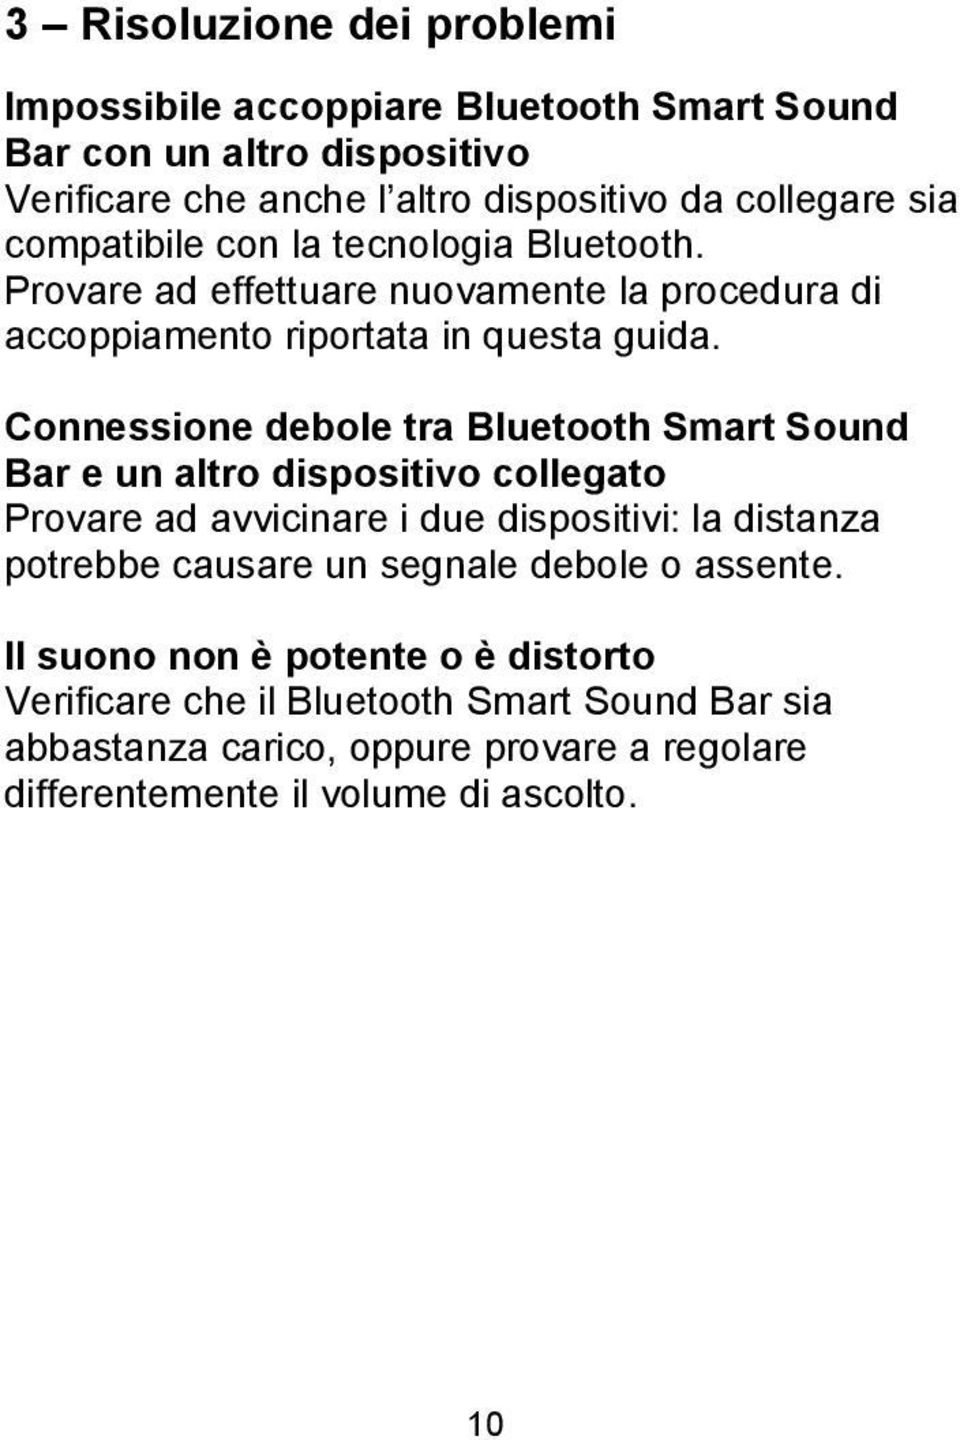 Connessione debole tra Bluetooth Smart Sound Bar e un altro dispositivo collegato Provare ad avvicinare i due dispositivi: la distanza potrebbe causare un